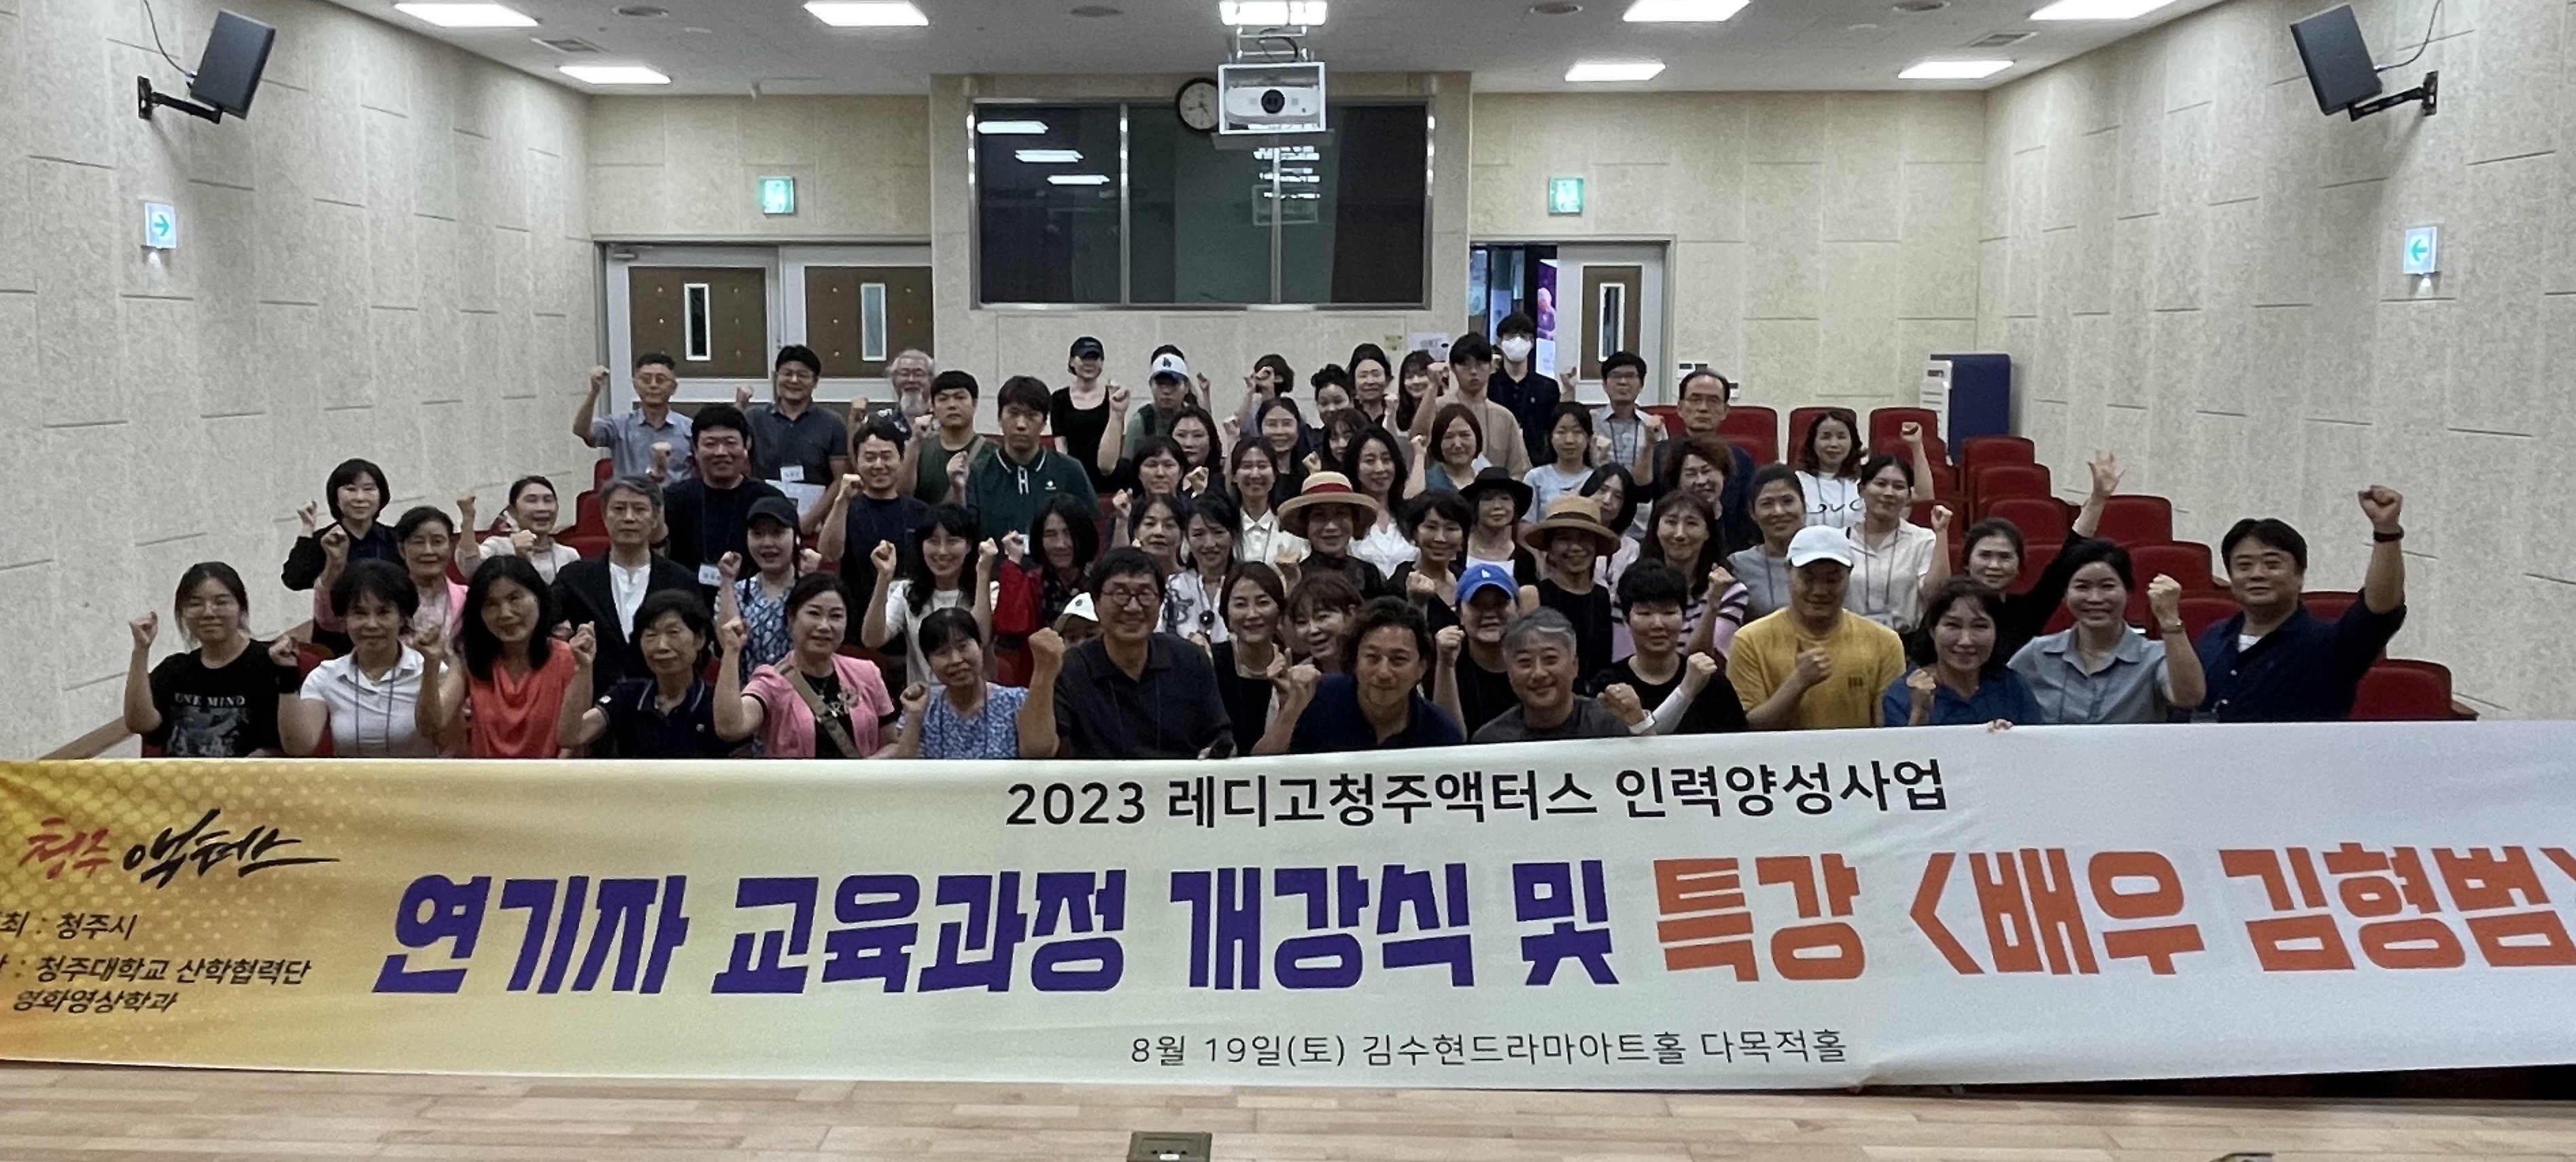 청주대학교 산학협력단은 지난 19일 김수현드라마아트홀에서 ‘2023 레디고청주액터스 인력양성’ 사업 9기 개강식을 개최했다.